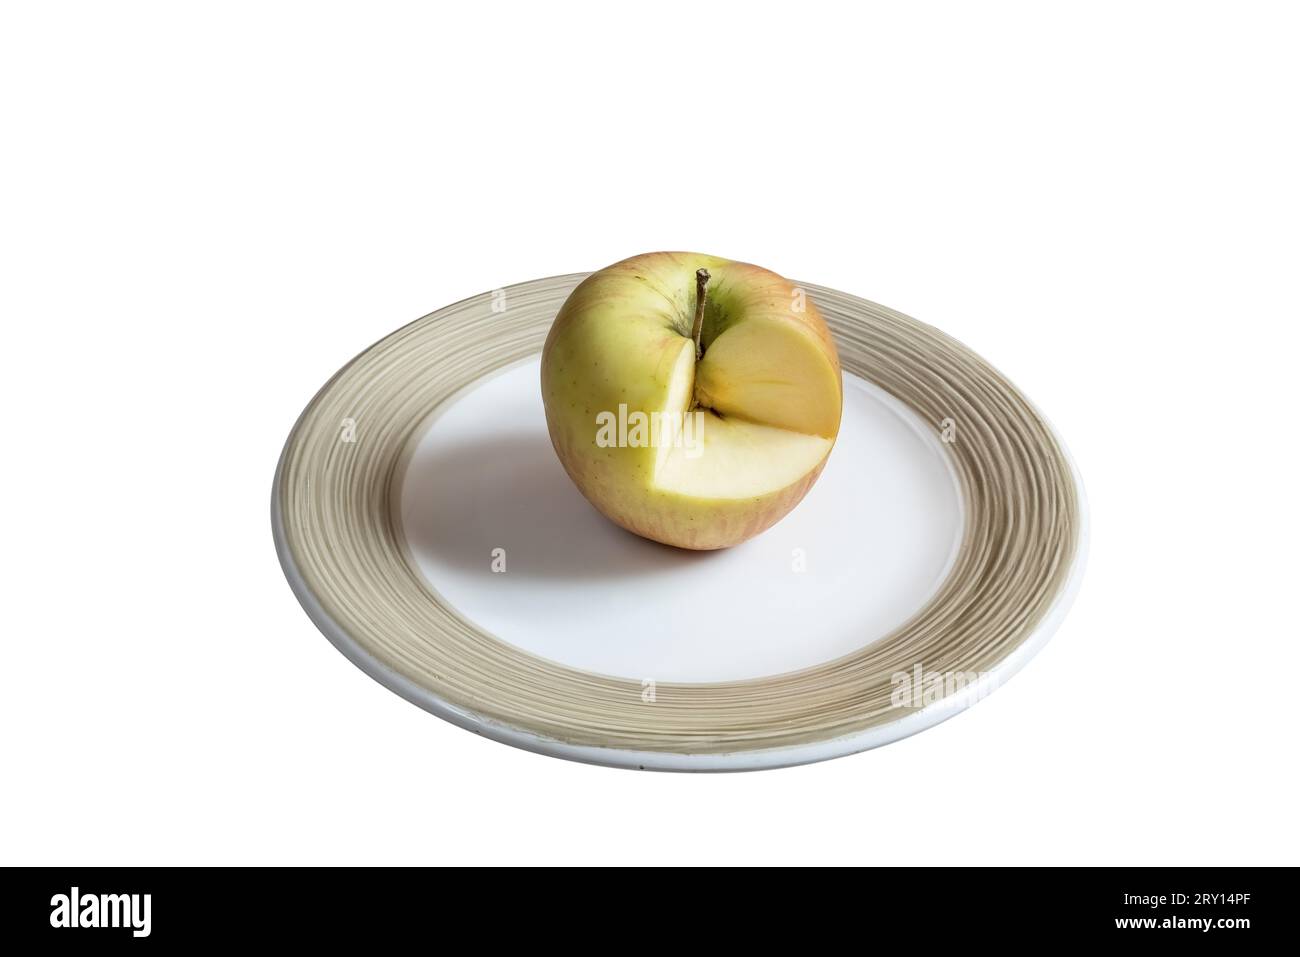 Ein Schnitt Apple auf einem weißen Teller auf dem hölzernen Tisch Stockfoto